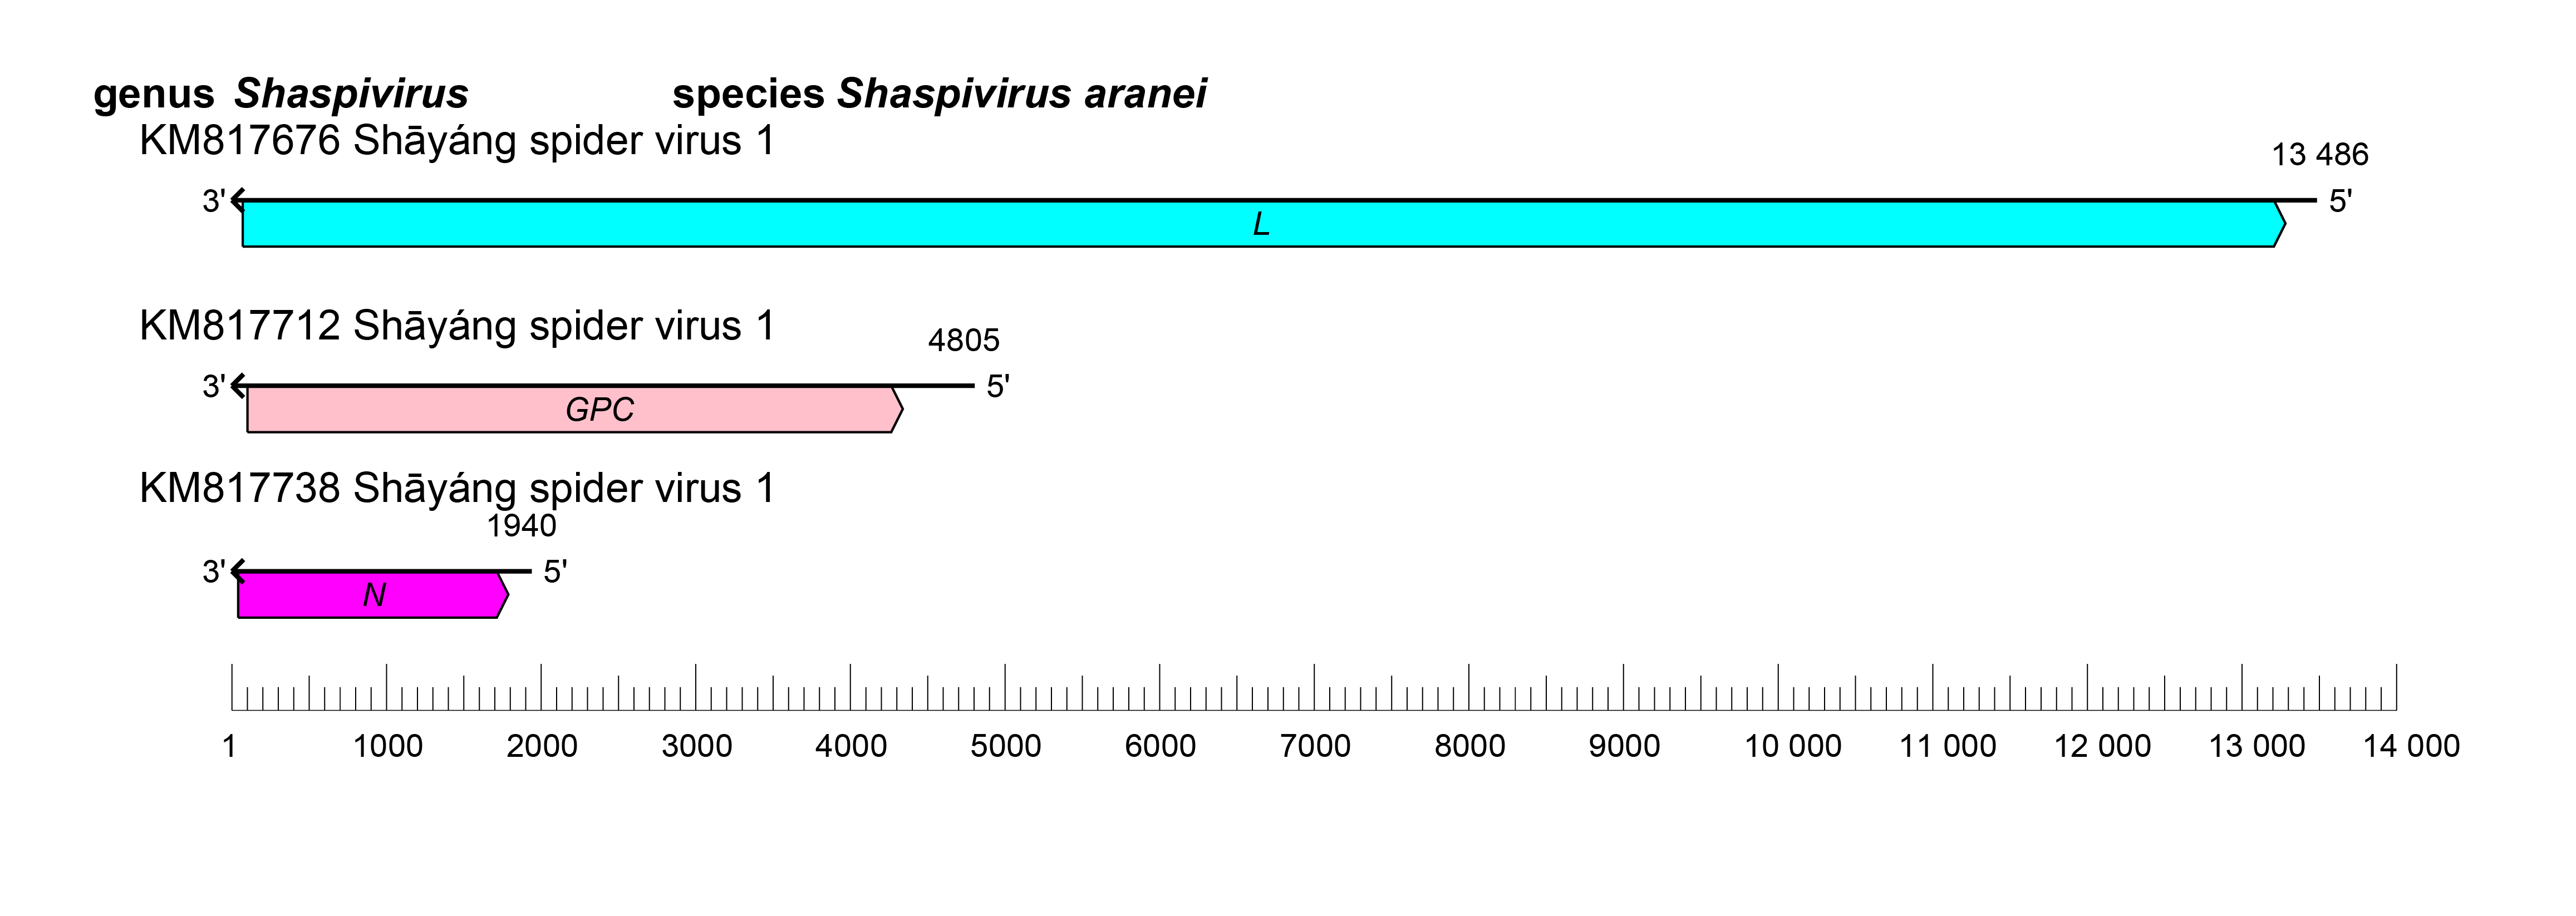 Shaspivirus genome